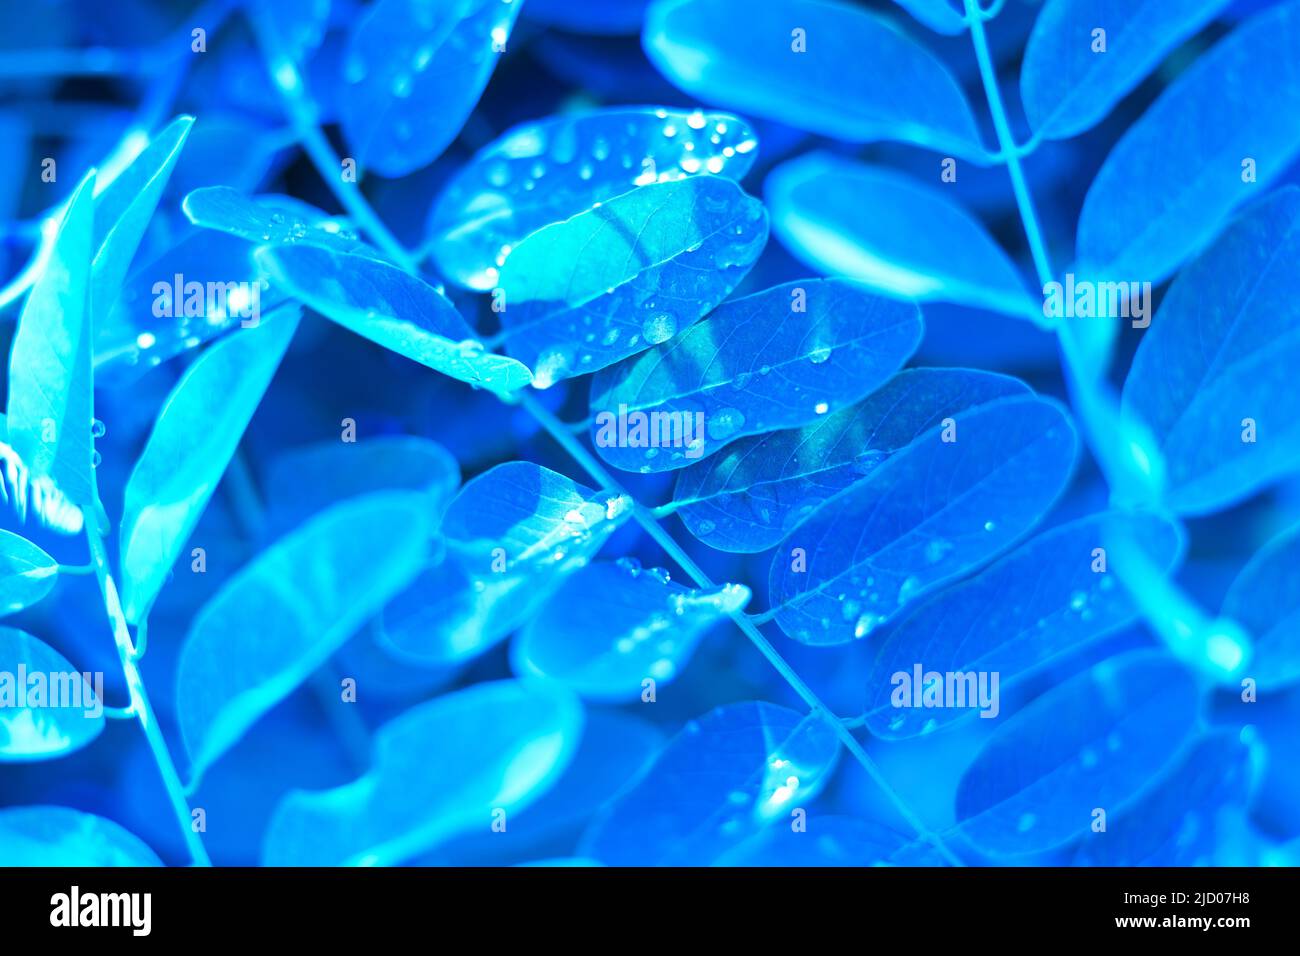 Feuilles bleues avec gouttes d'eau. Arrière-plan lumineux et verdoyant. Banque D'Images